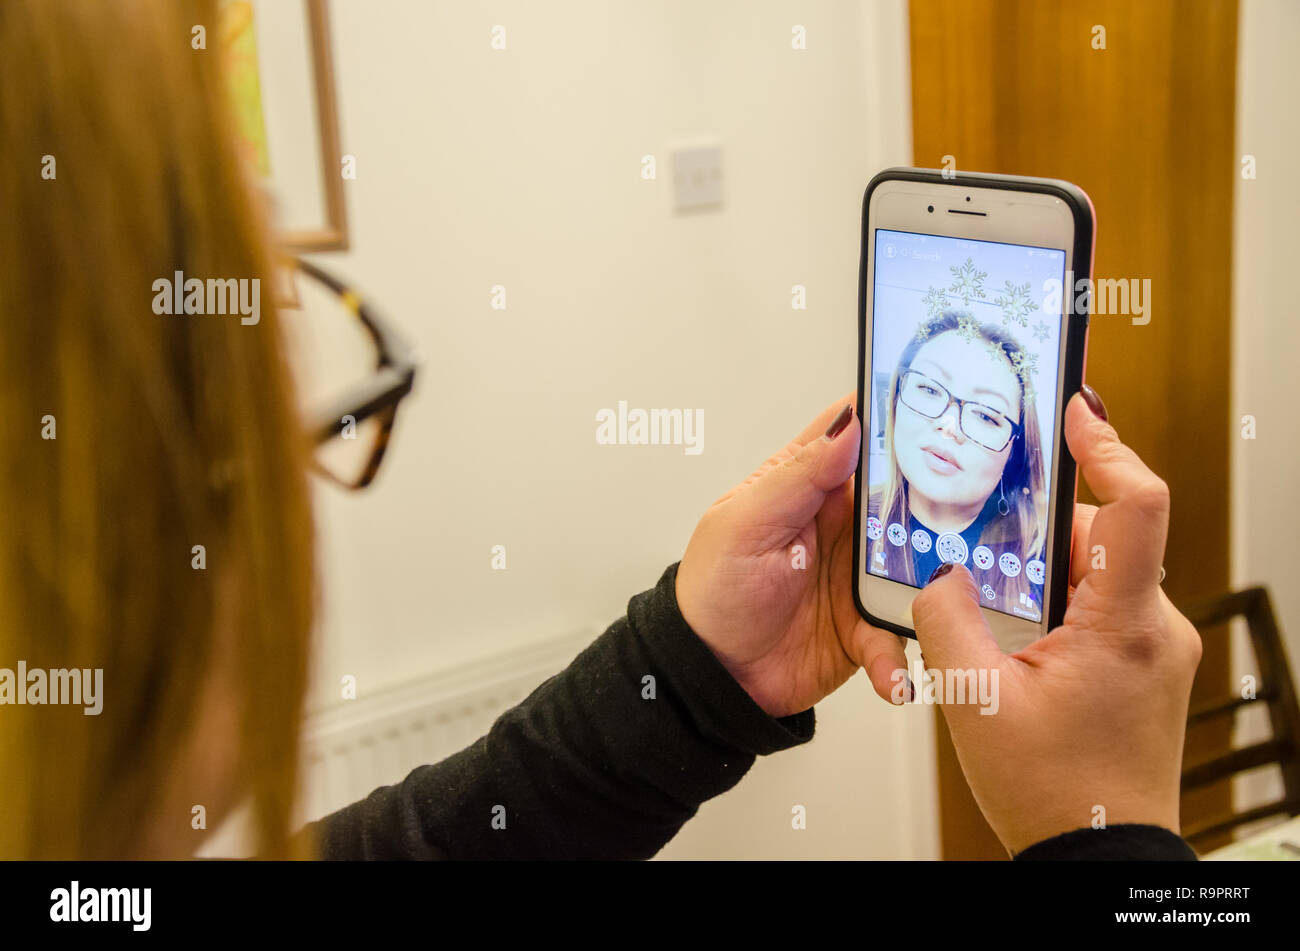 Eine Dame nimmt eine selfie mit Snapchat auf einem iPhone, die das Bild der Dateiverwaltung mit Effekten Stockfoto